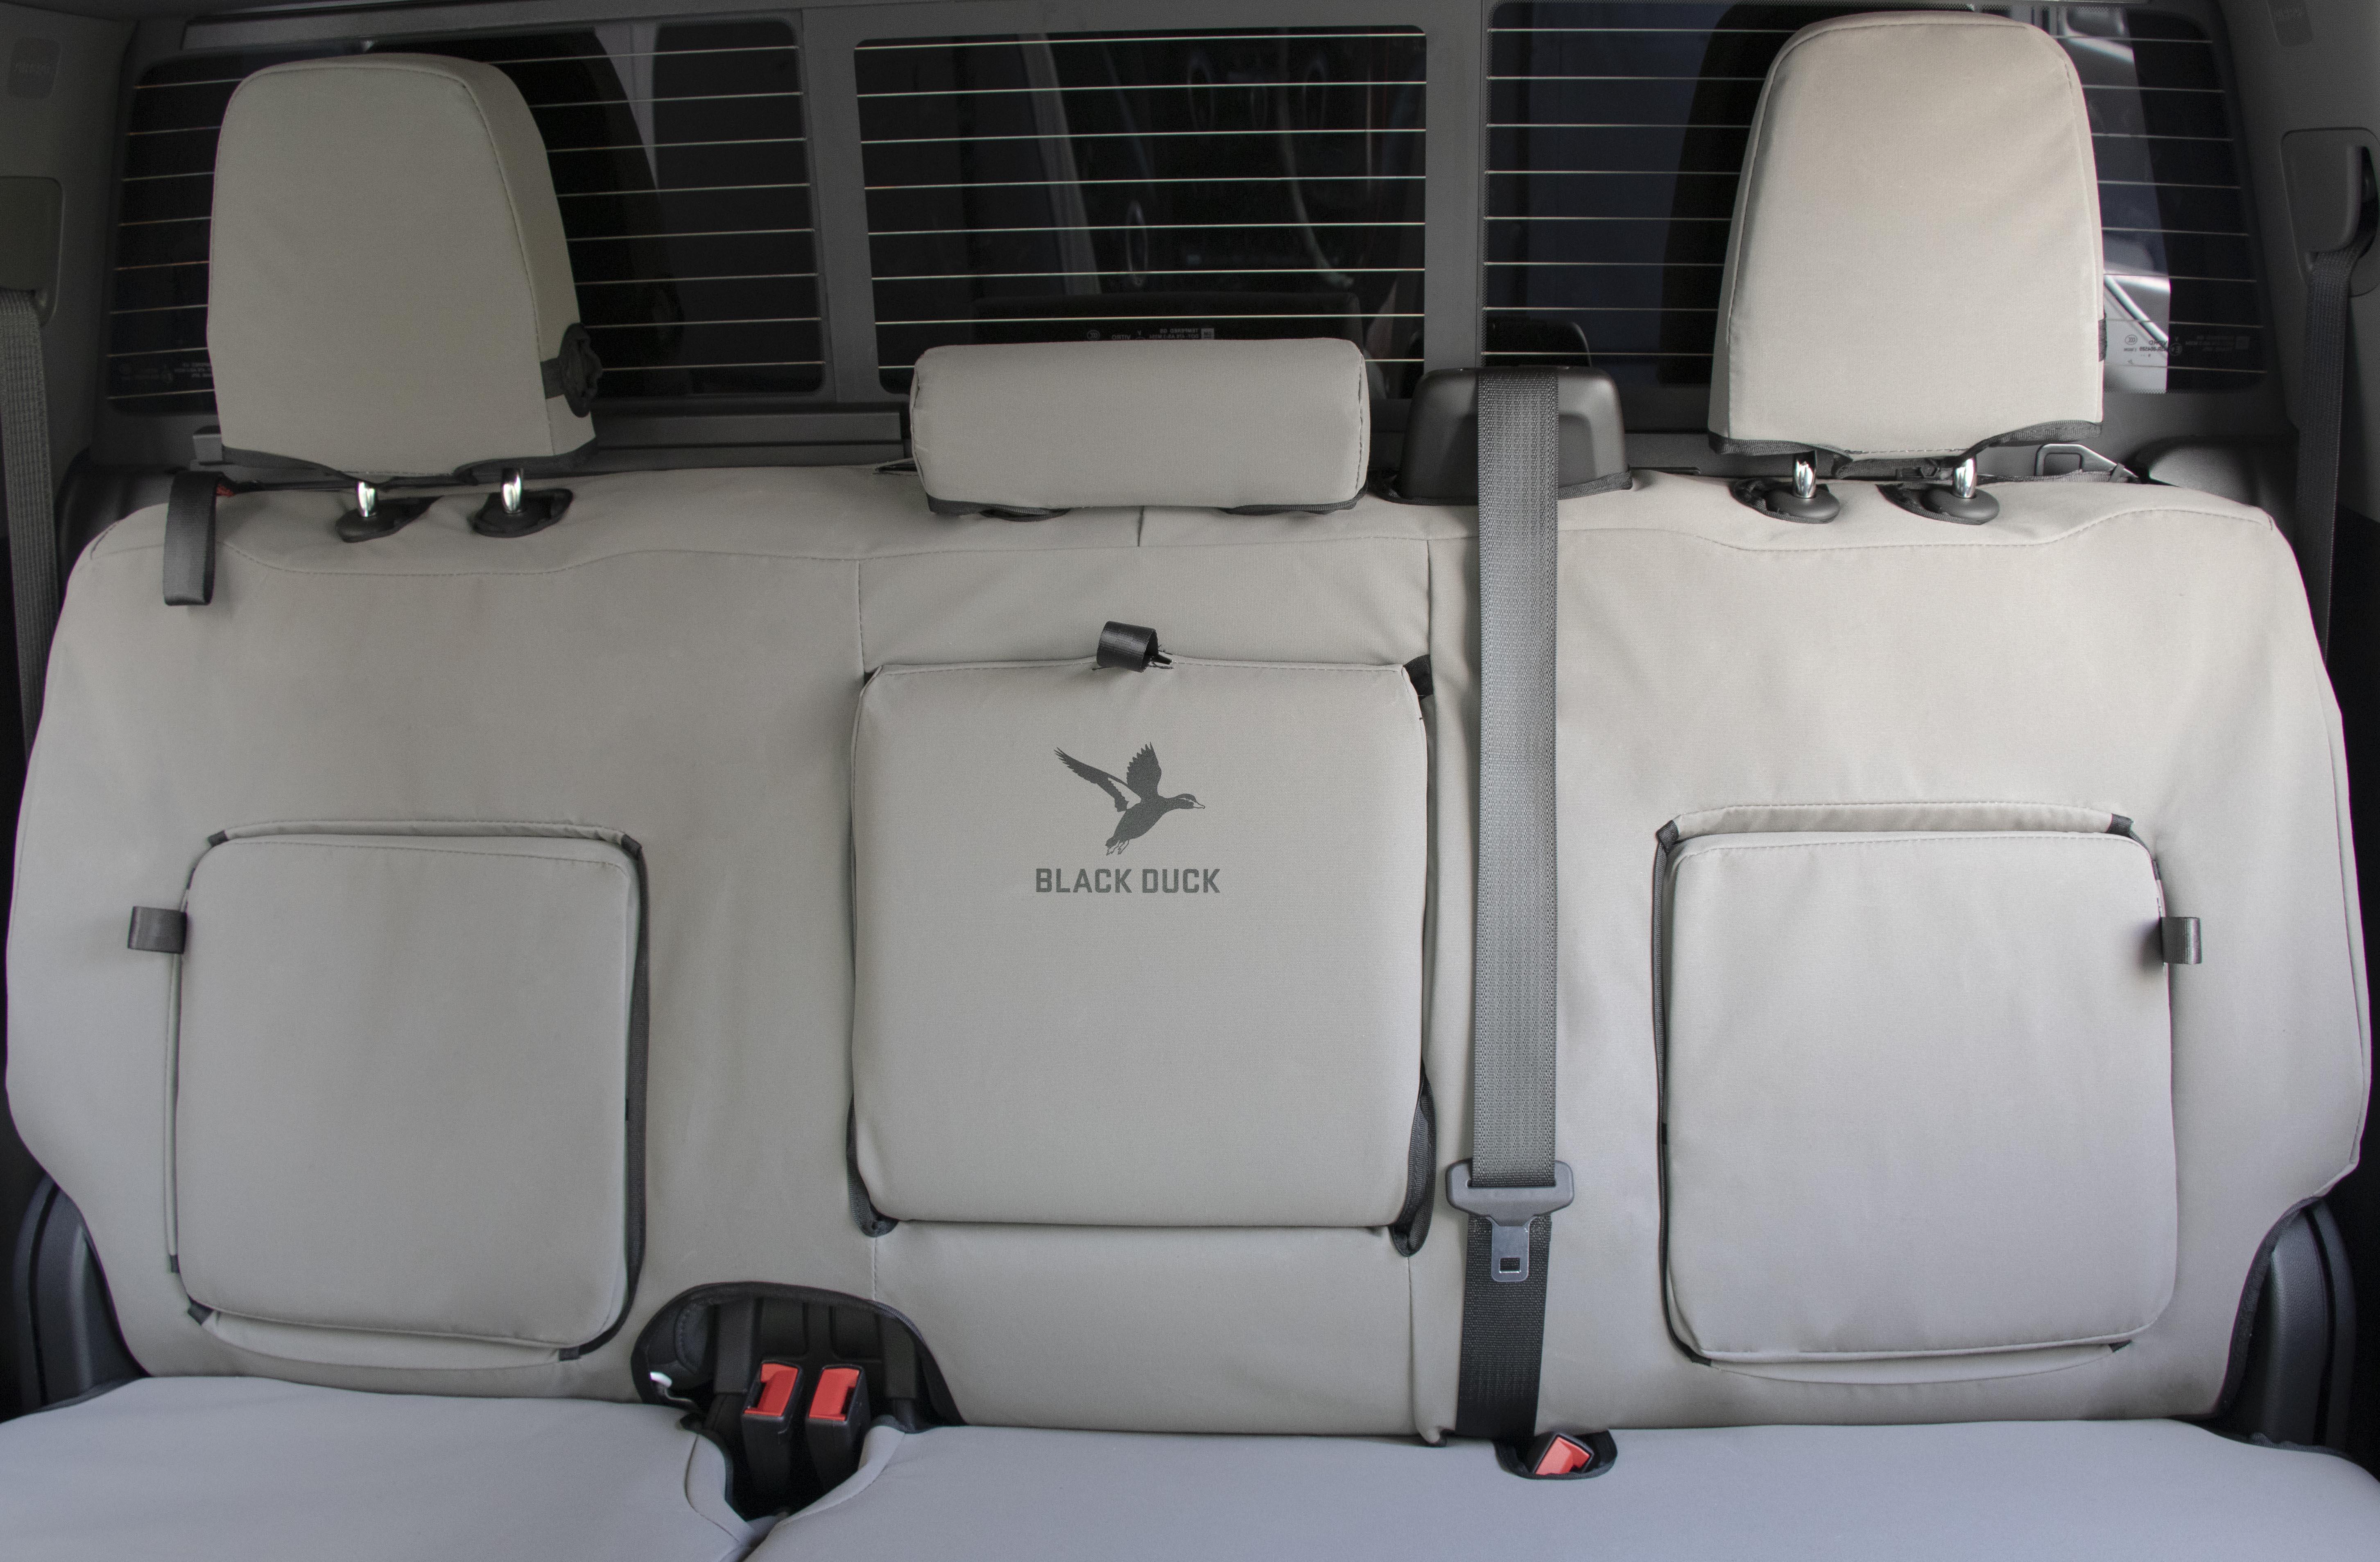 Silverado Chevrolet Rear Bench with Grey Canvas Black Duck SeatCovers